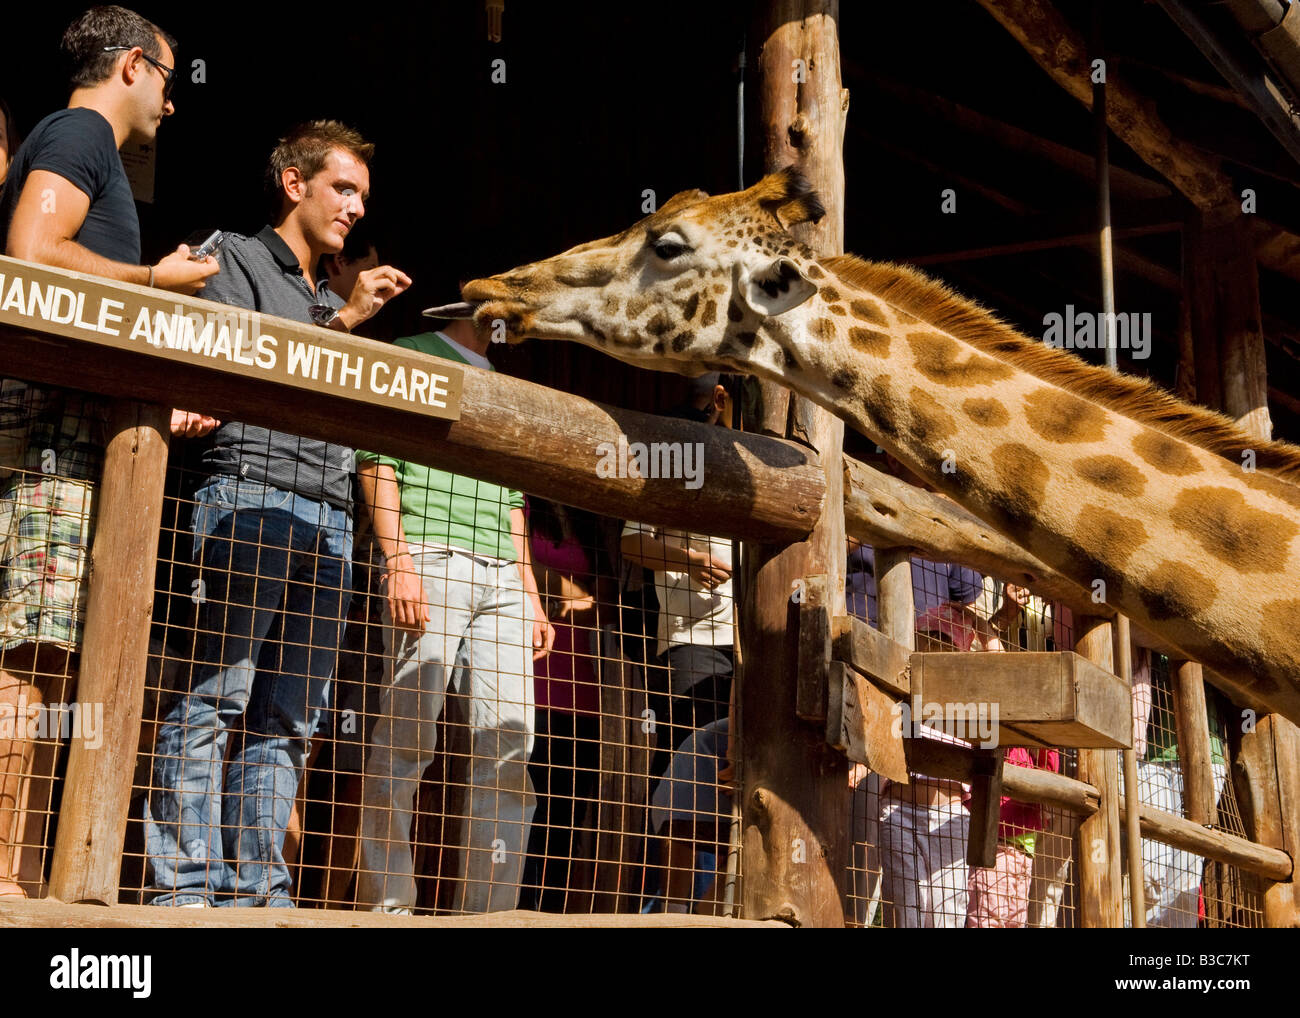 Kenya, Nairobi, Langata Giraffe Centre. Tourists can hand feed the giraffe at giraffe's eye-level at the Langata Giraffe Centre. Stock Photo